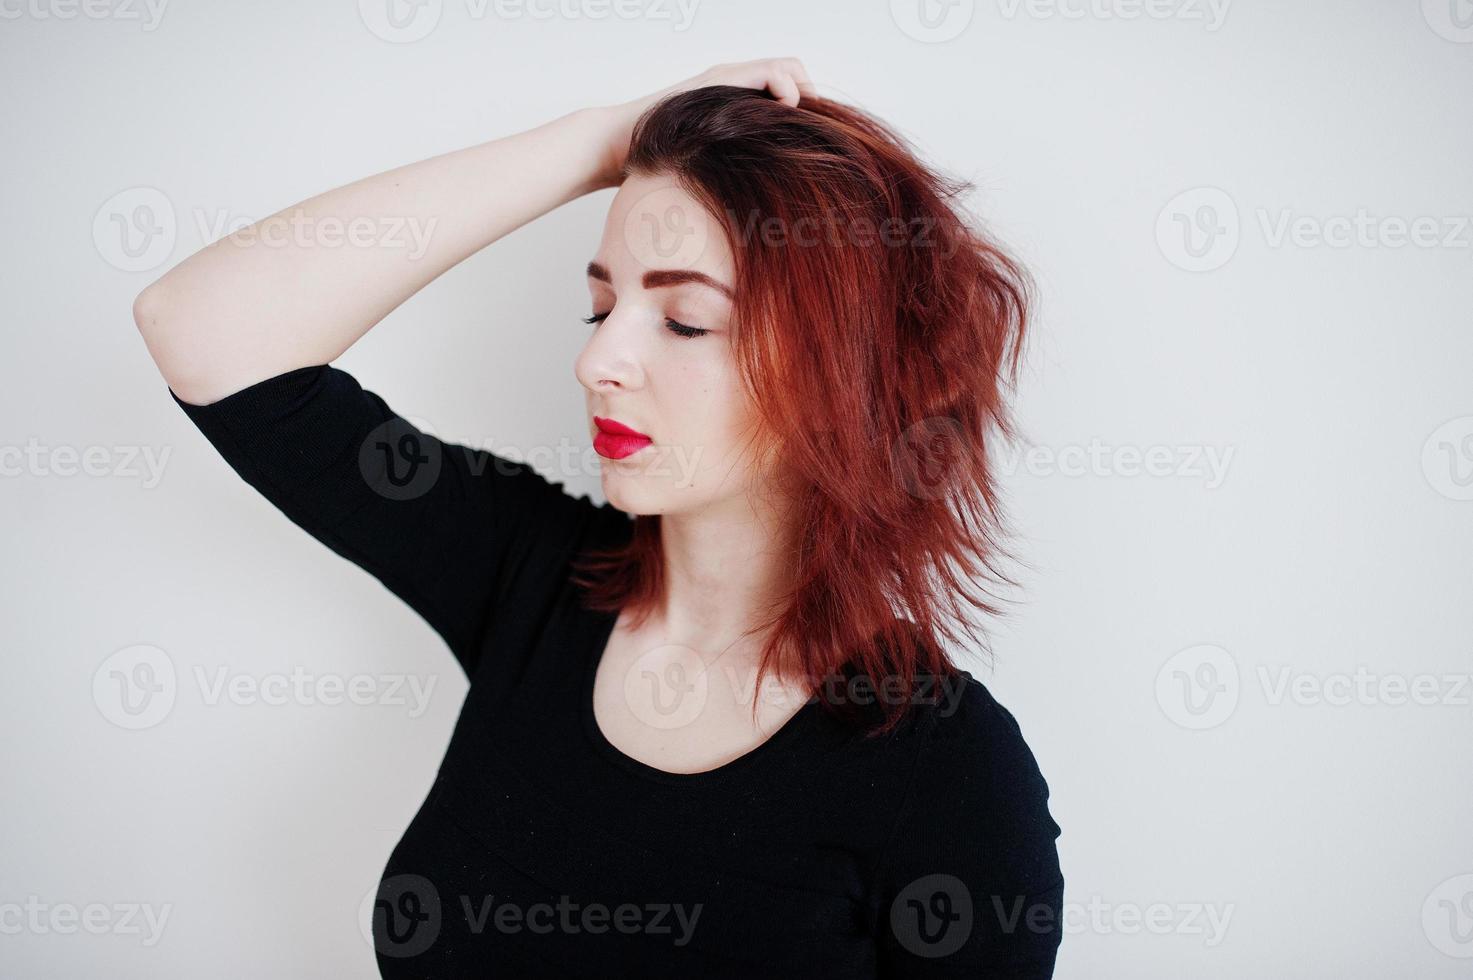 rödhårig tjej på svart klänning tunika mot vit vägg på tomma rum. foto